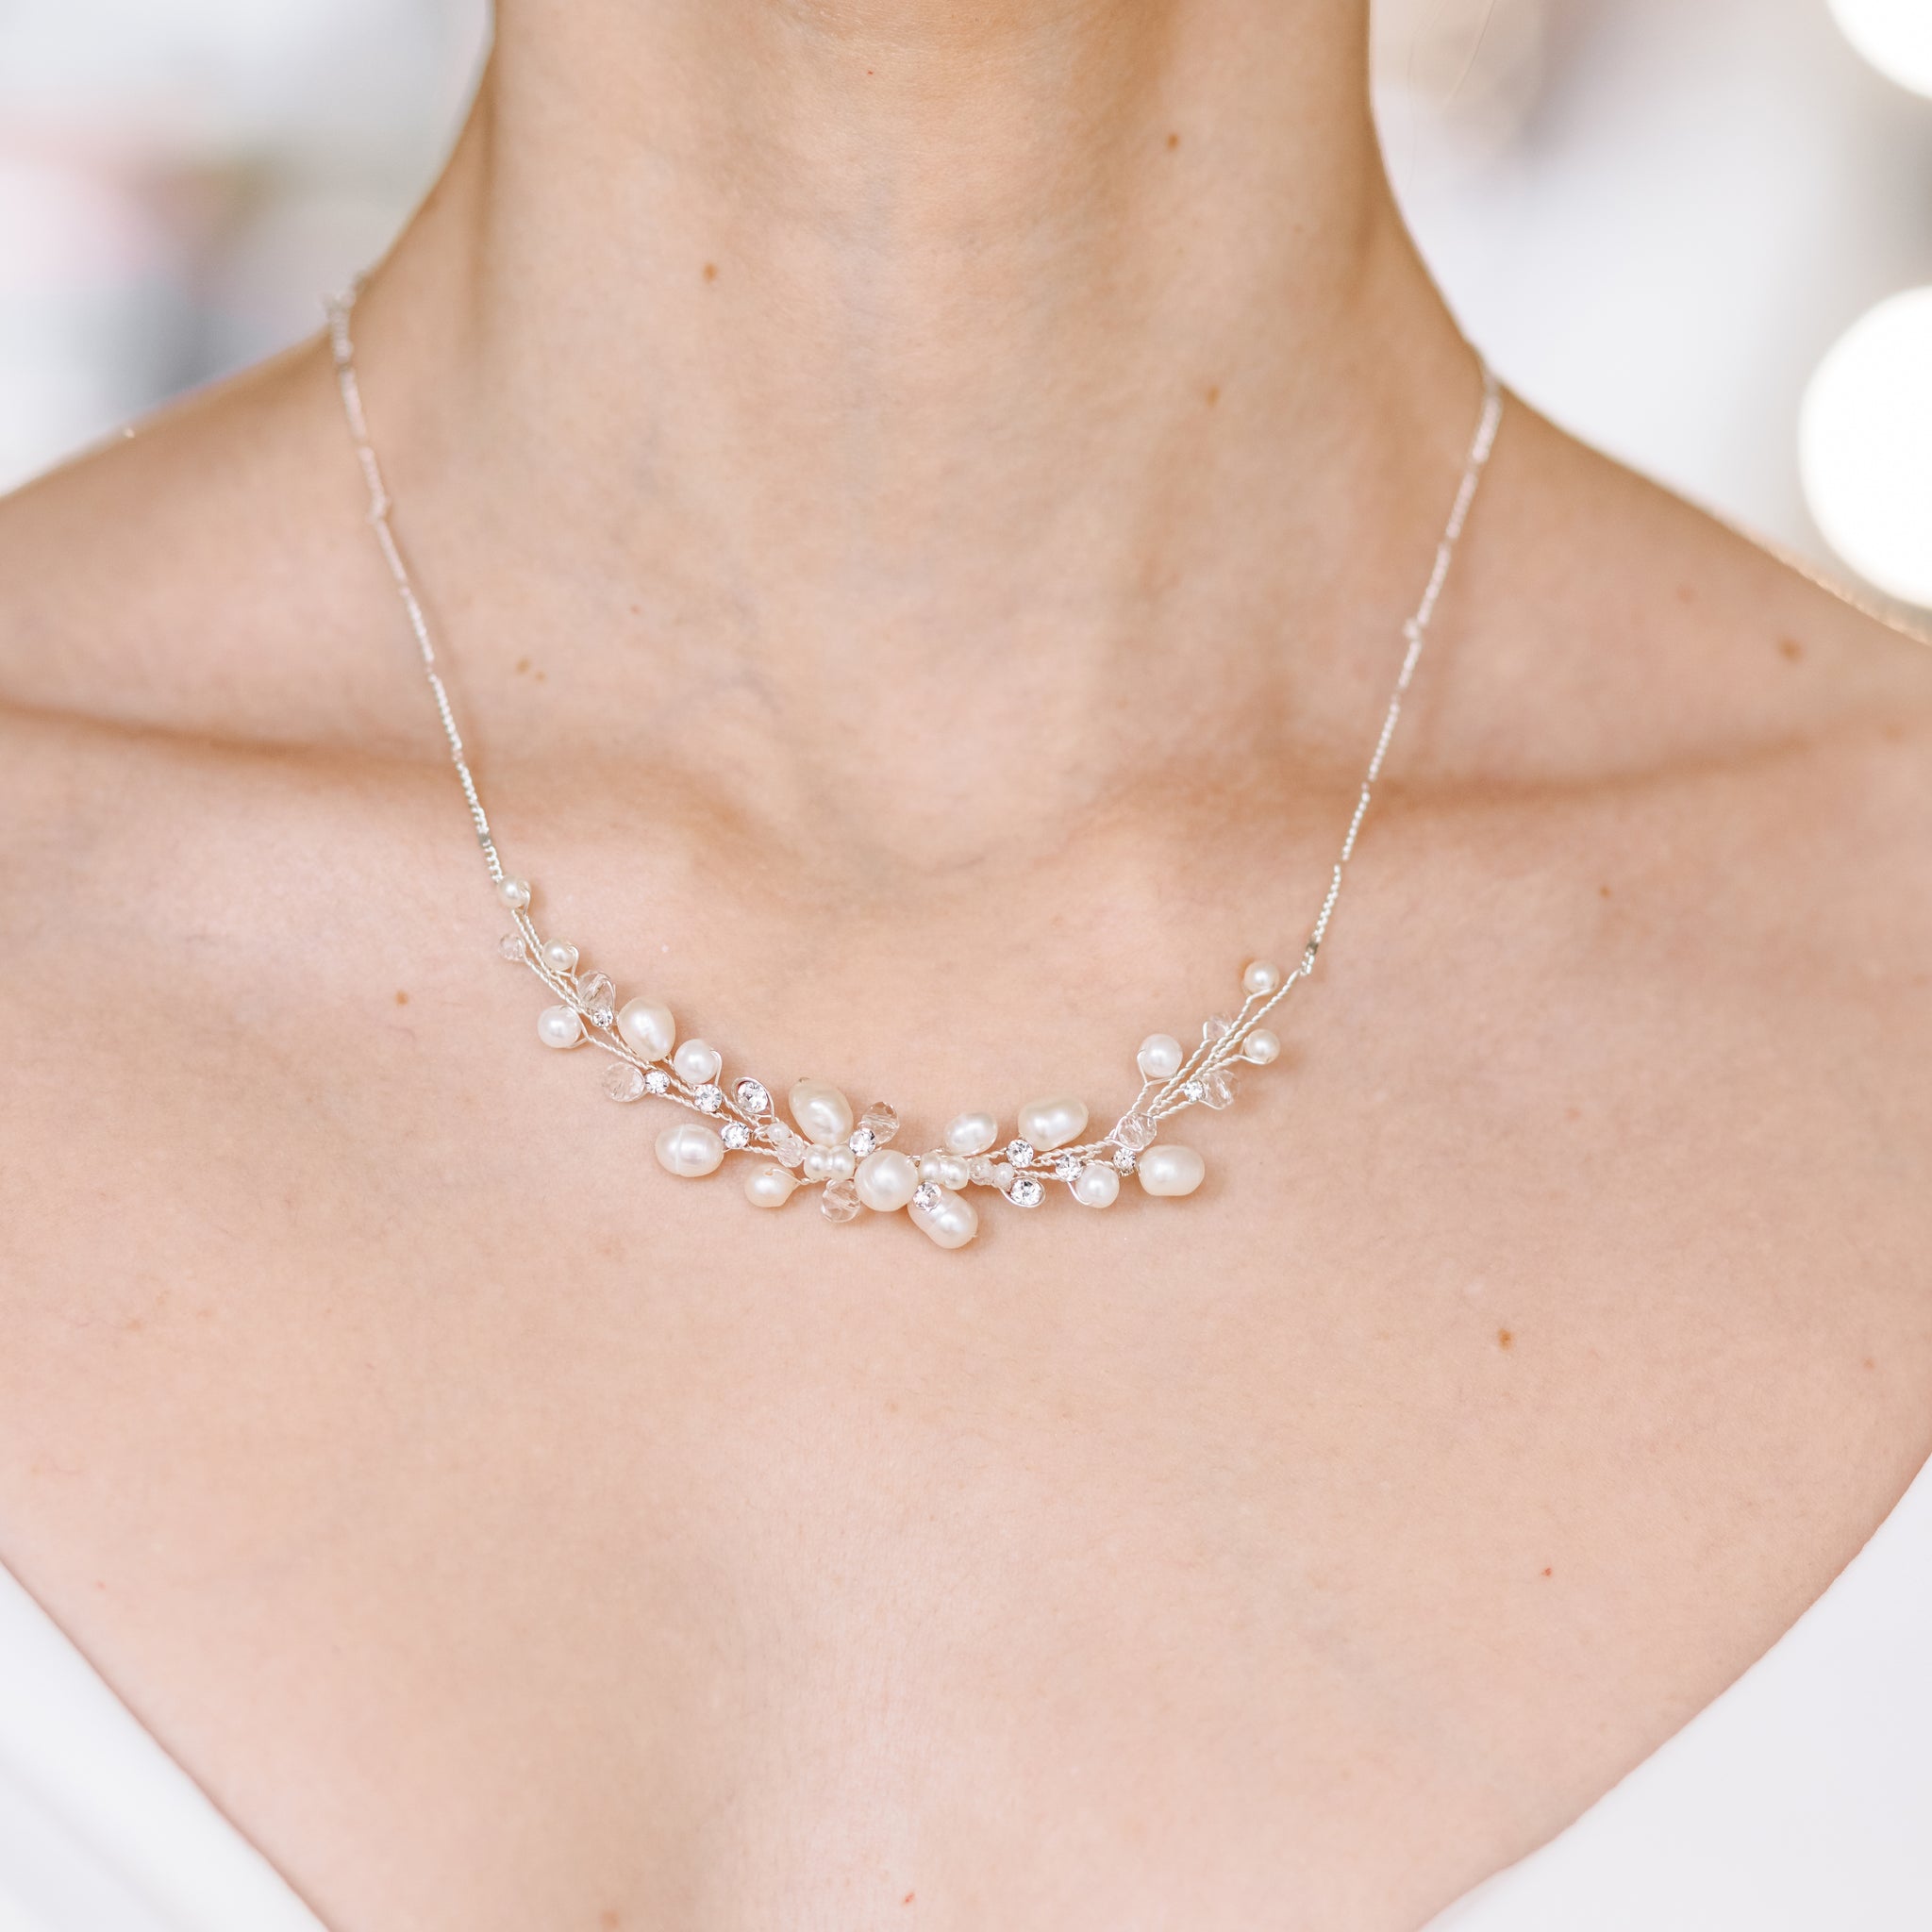 Bridal necklaces